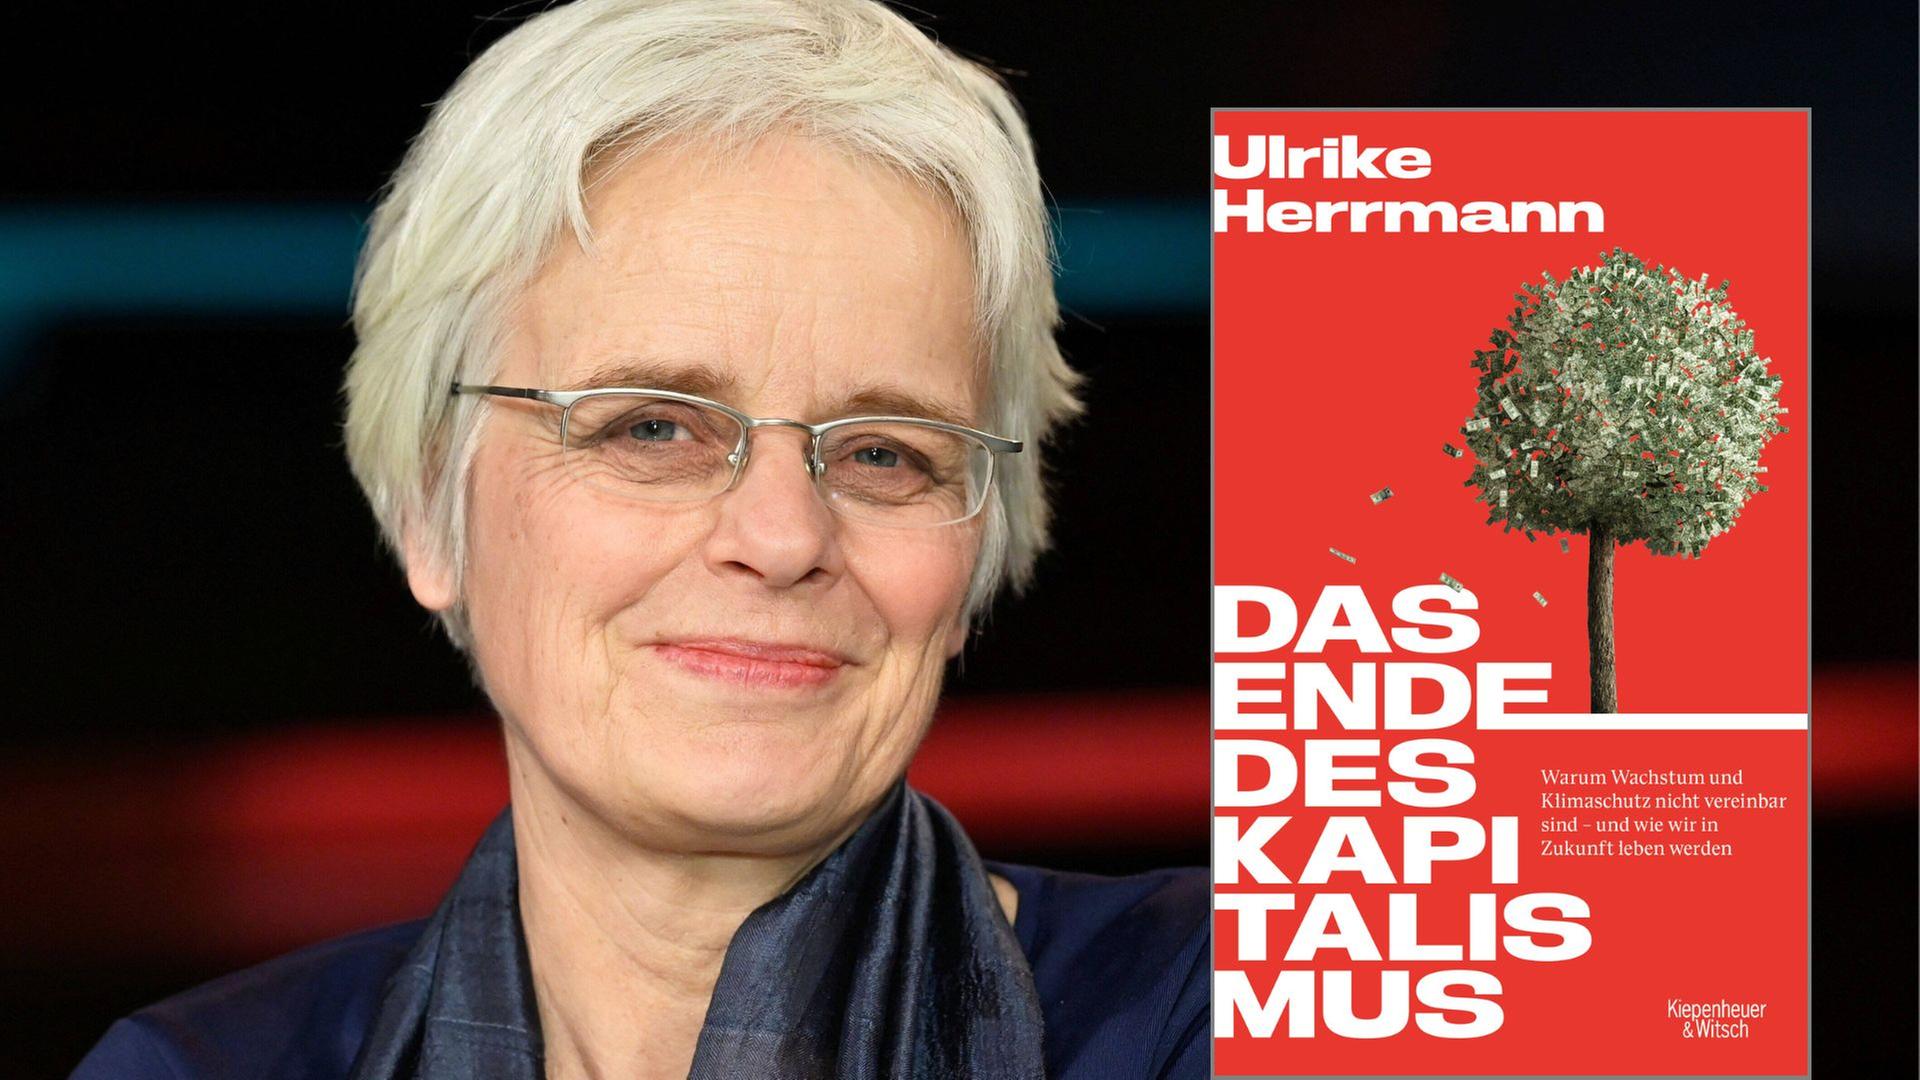 Ulrike Herrmann: "Das Ende des Kapitalismus. Warum Wachstum und Klimaschutz nicht vereinbar sind - und wie wir in Zukunft leben werden", Kiepenheuer & Witsch Verlag
